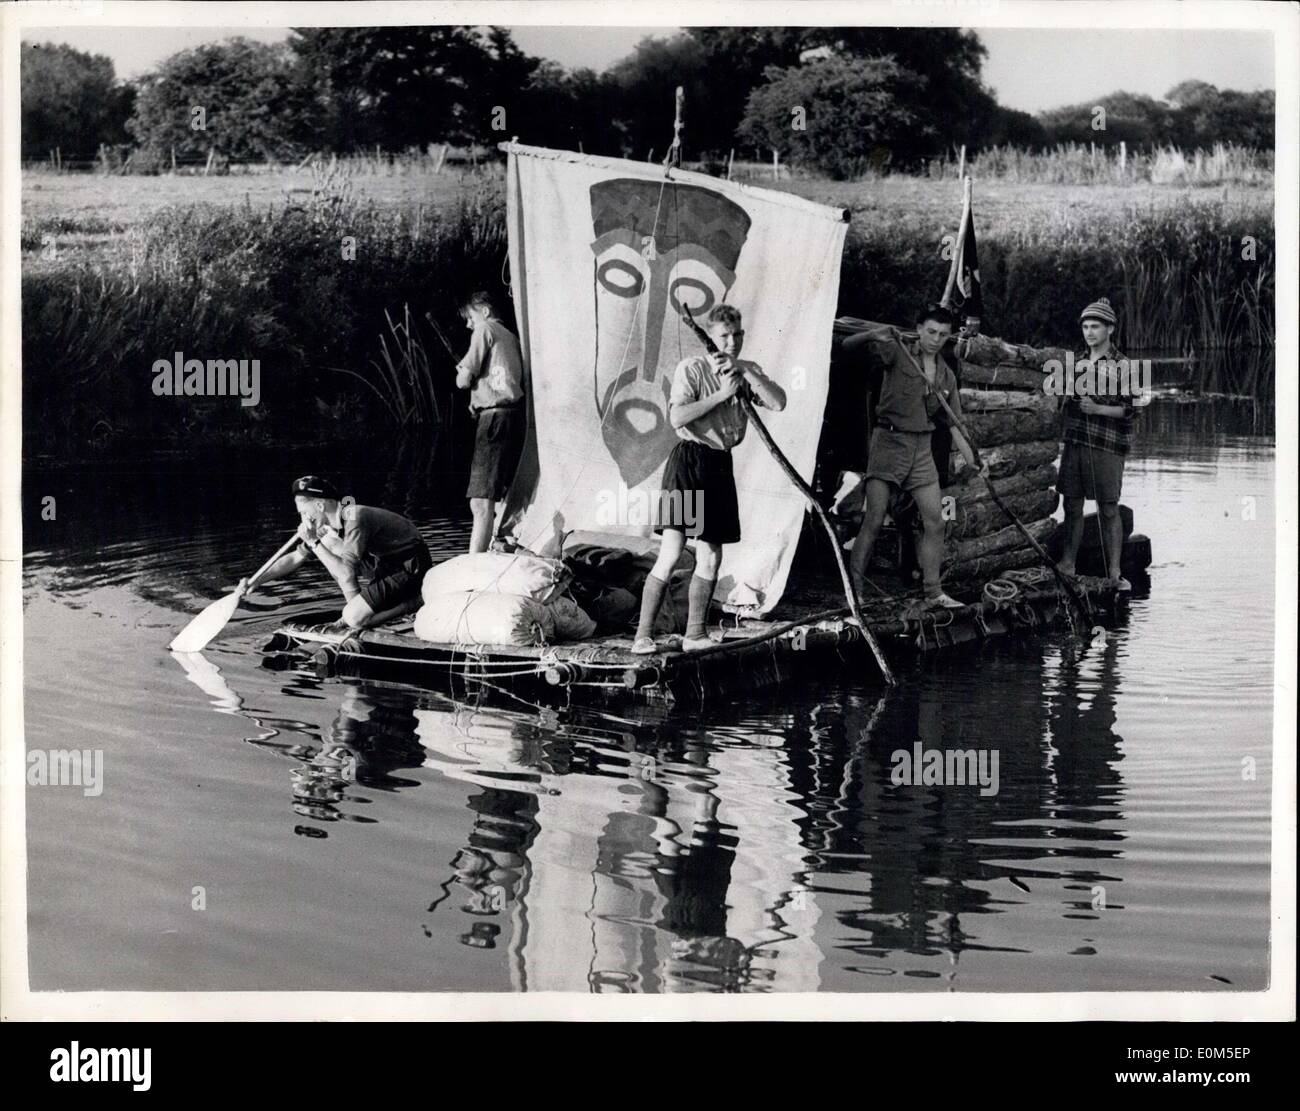 13. August 1953 - das Kon-TIki Boys kommt Kreuzfahrt auf der Themse.: Old Man River bekommt eine Adventuruos Crew. Fünf Bristol Boy Scouts auf ihre hausgemachten Nachbildung des berühmten Kon-Tiki-Floß schweben auf Ölfässern auf der Themse. Sie begannen von Lechlade, Gloucestershire, am Sonntag. Aber es ist harte Arbeit poling - sie brauchten drei Tage, 16 Meilen zurückzulegen. Sie hoffen, Oxford Morgen erreichen. Sie sind hier zu sehen bei Shifford Lock, Oxfordshire. Die Reise, einschließlich das Floß und deren Transport zum Fluss Kosten? 3 2 s, einen Kopf. Stockfoto